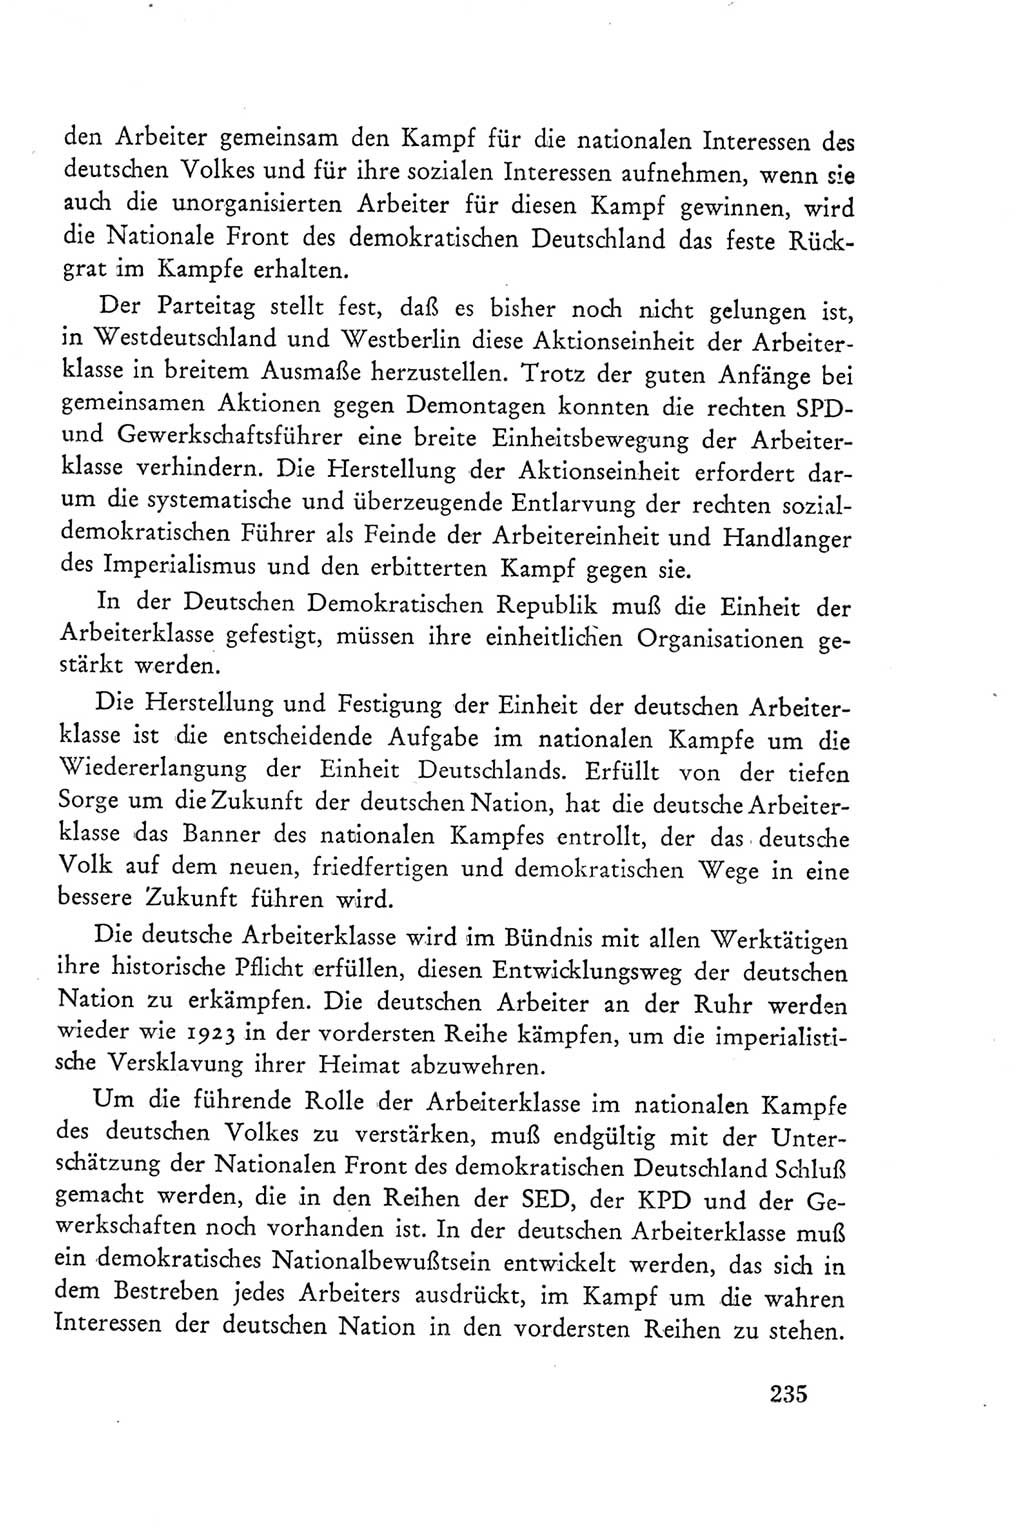 Protokoll der Verhandlungen des Ⅲ. Parteitages der Sozialistischen Einheitspartei Deutschlands (SED) [Deutsche Demokratische Republik (DDR)] 1950, Band 2, Seite 235 (Prot. Verh. Ⅲ. PT SED DDR 1950, Bd. 2, S. 235)